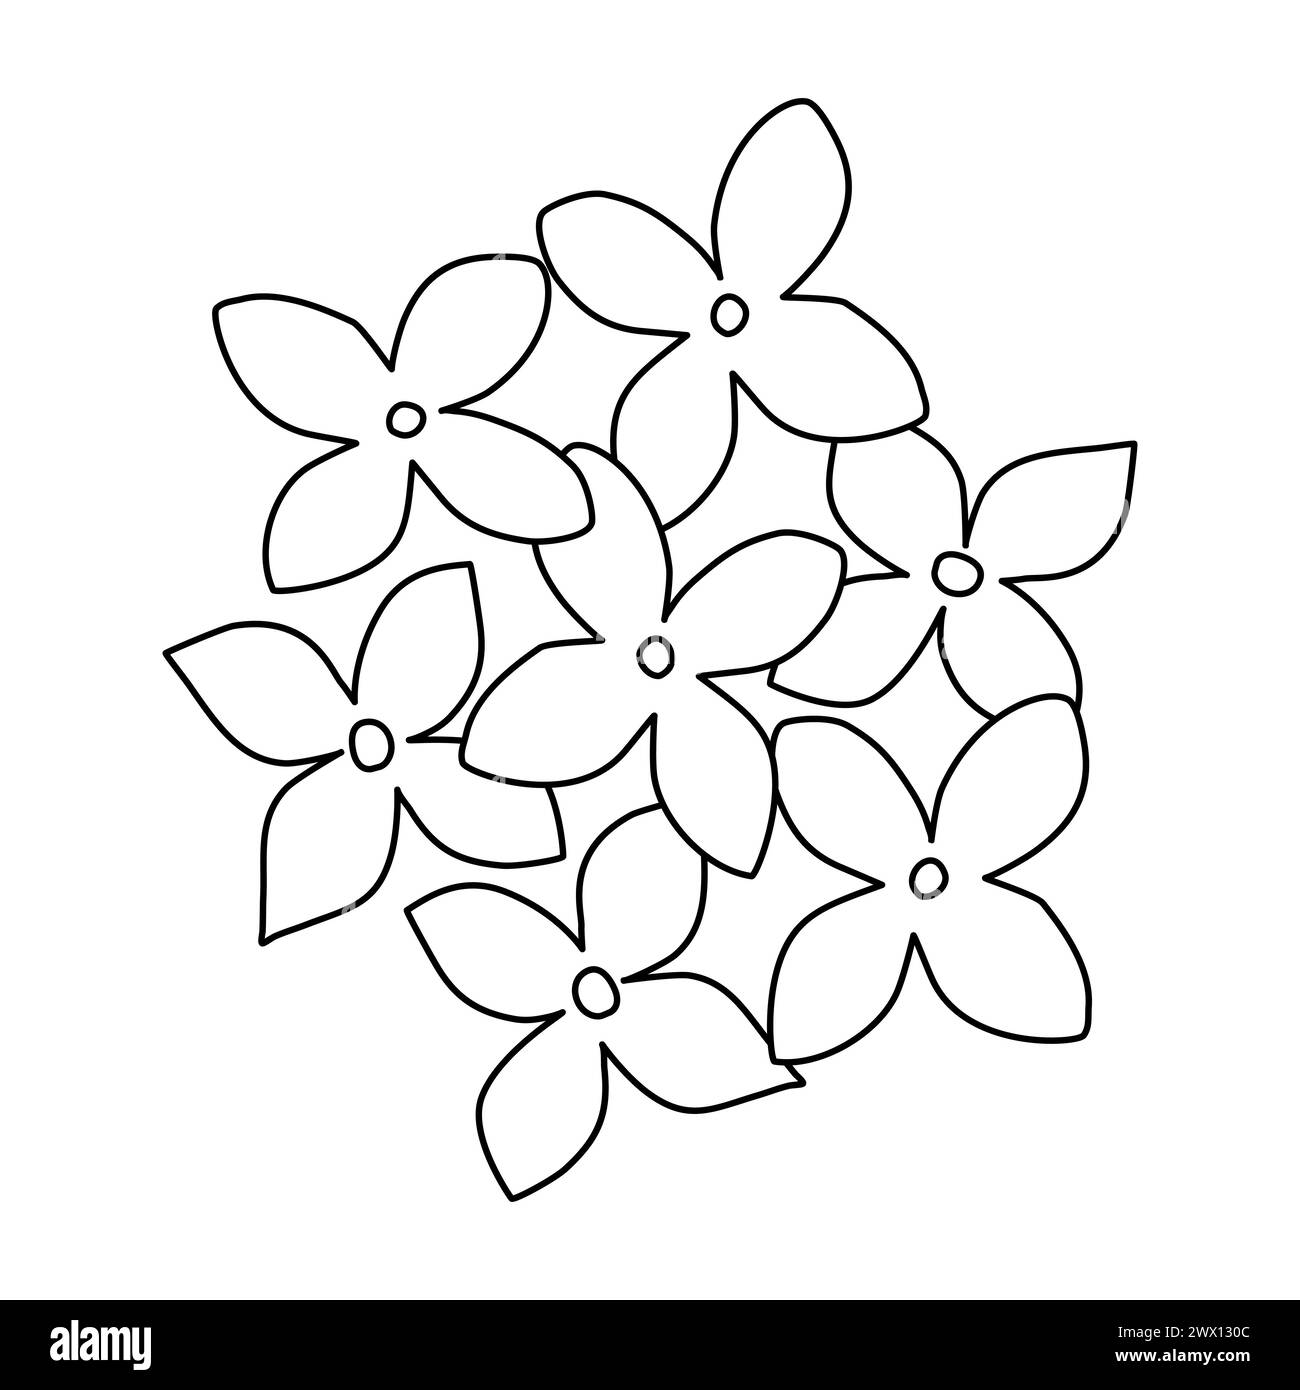 Flieder- oder Hortensie Blumen von oben, Doodle-Stil flache Vektor-Umrissillustration für Kinder Malbuch Stock Vektor